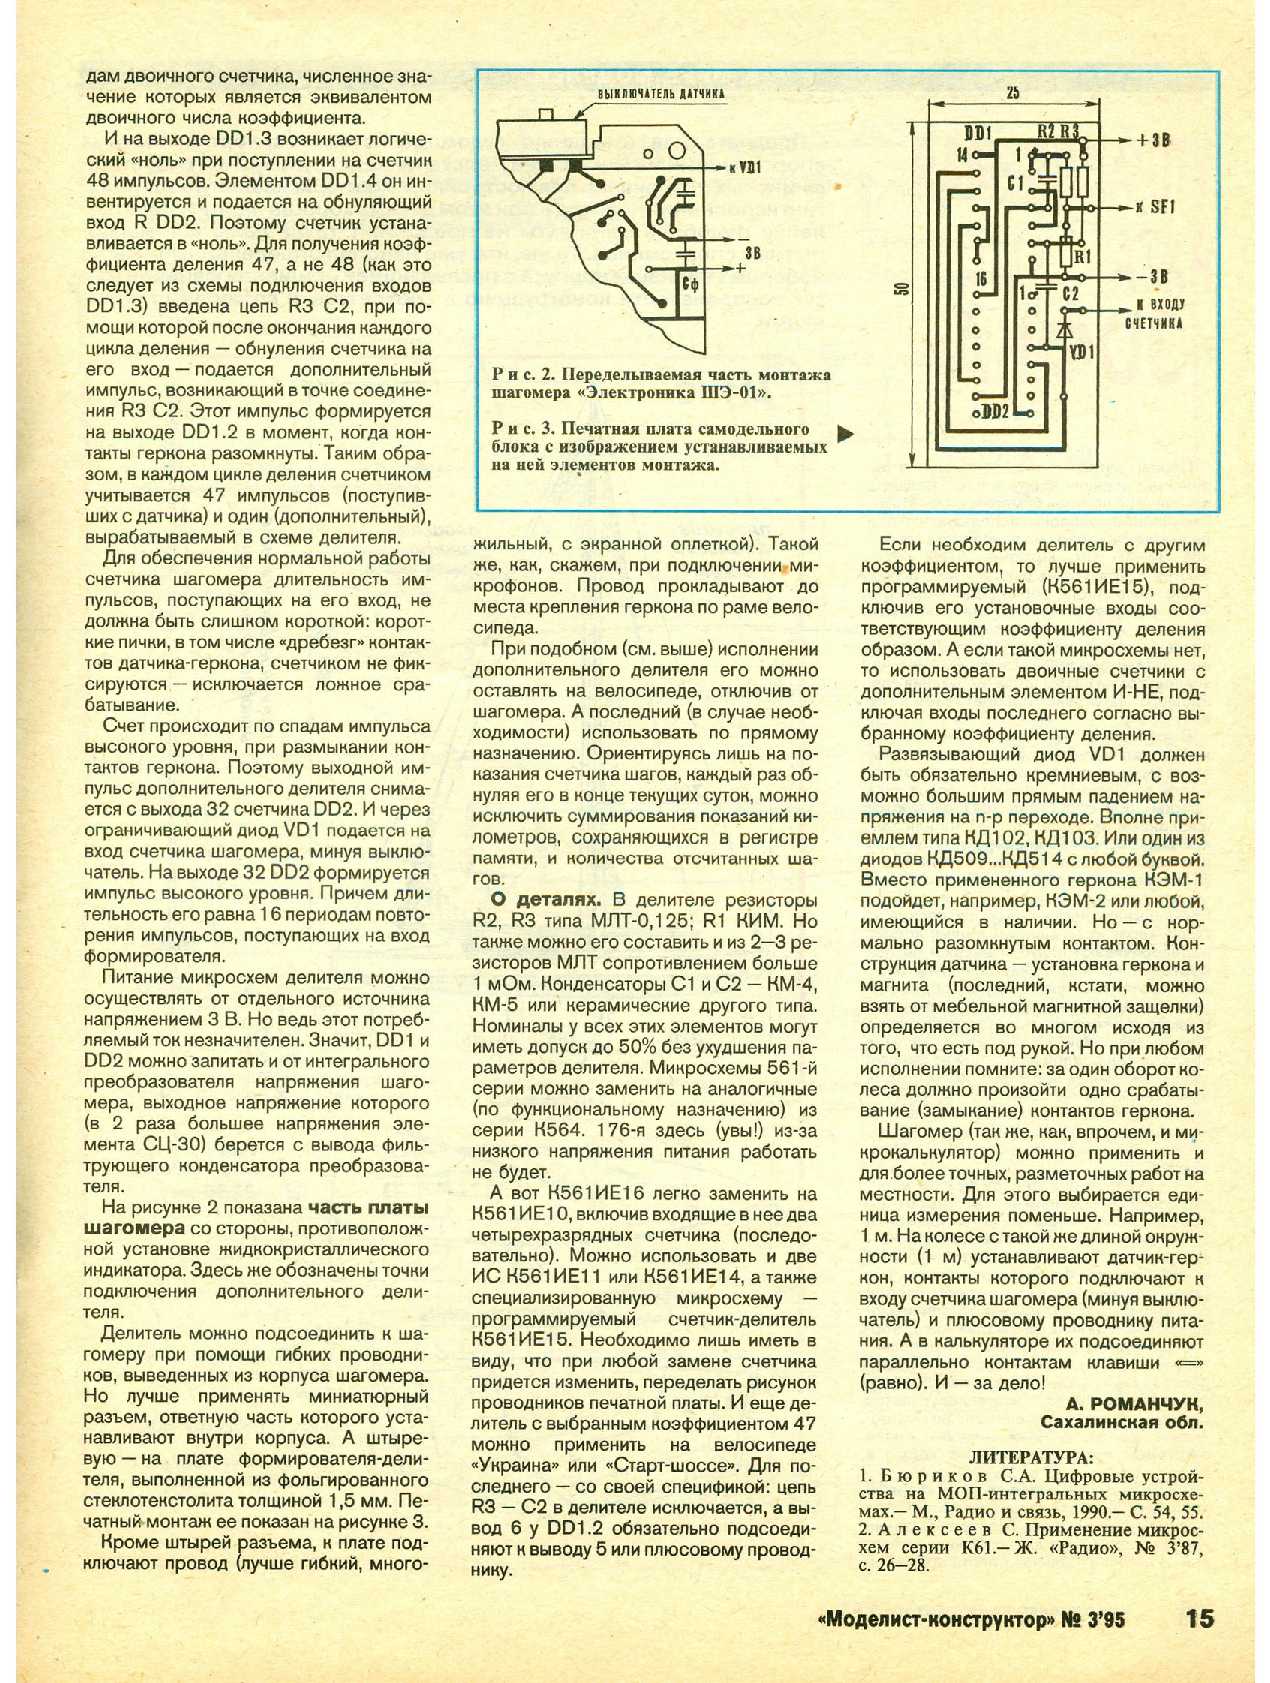 МК 3, 1995, 15 c.